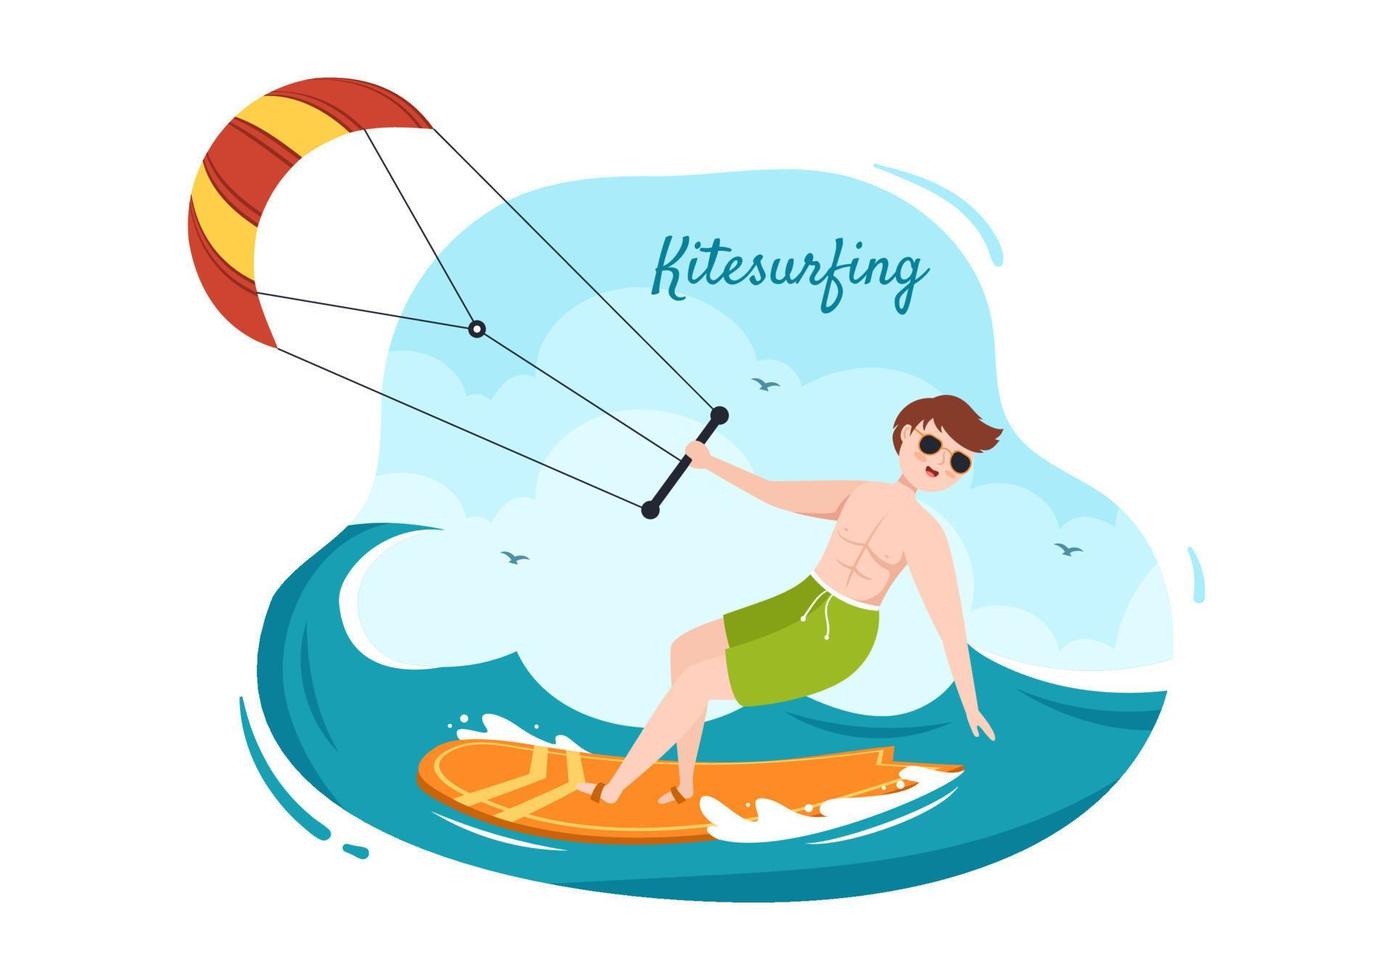 kitesurf d'été des activités de sports nautiques illustration de dessin animé avec un gros cerf-volant sur une planche dans un style plat vecteur